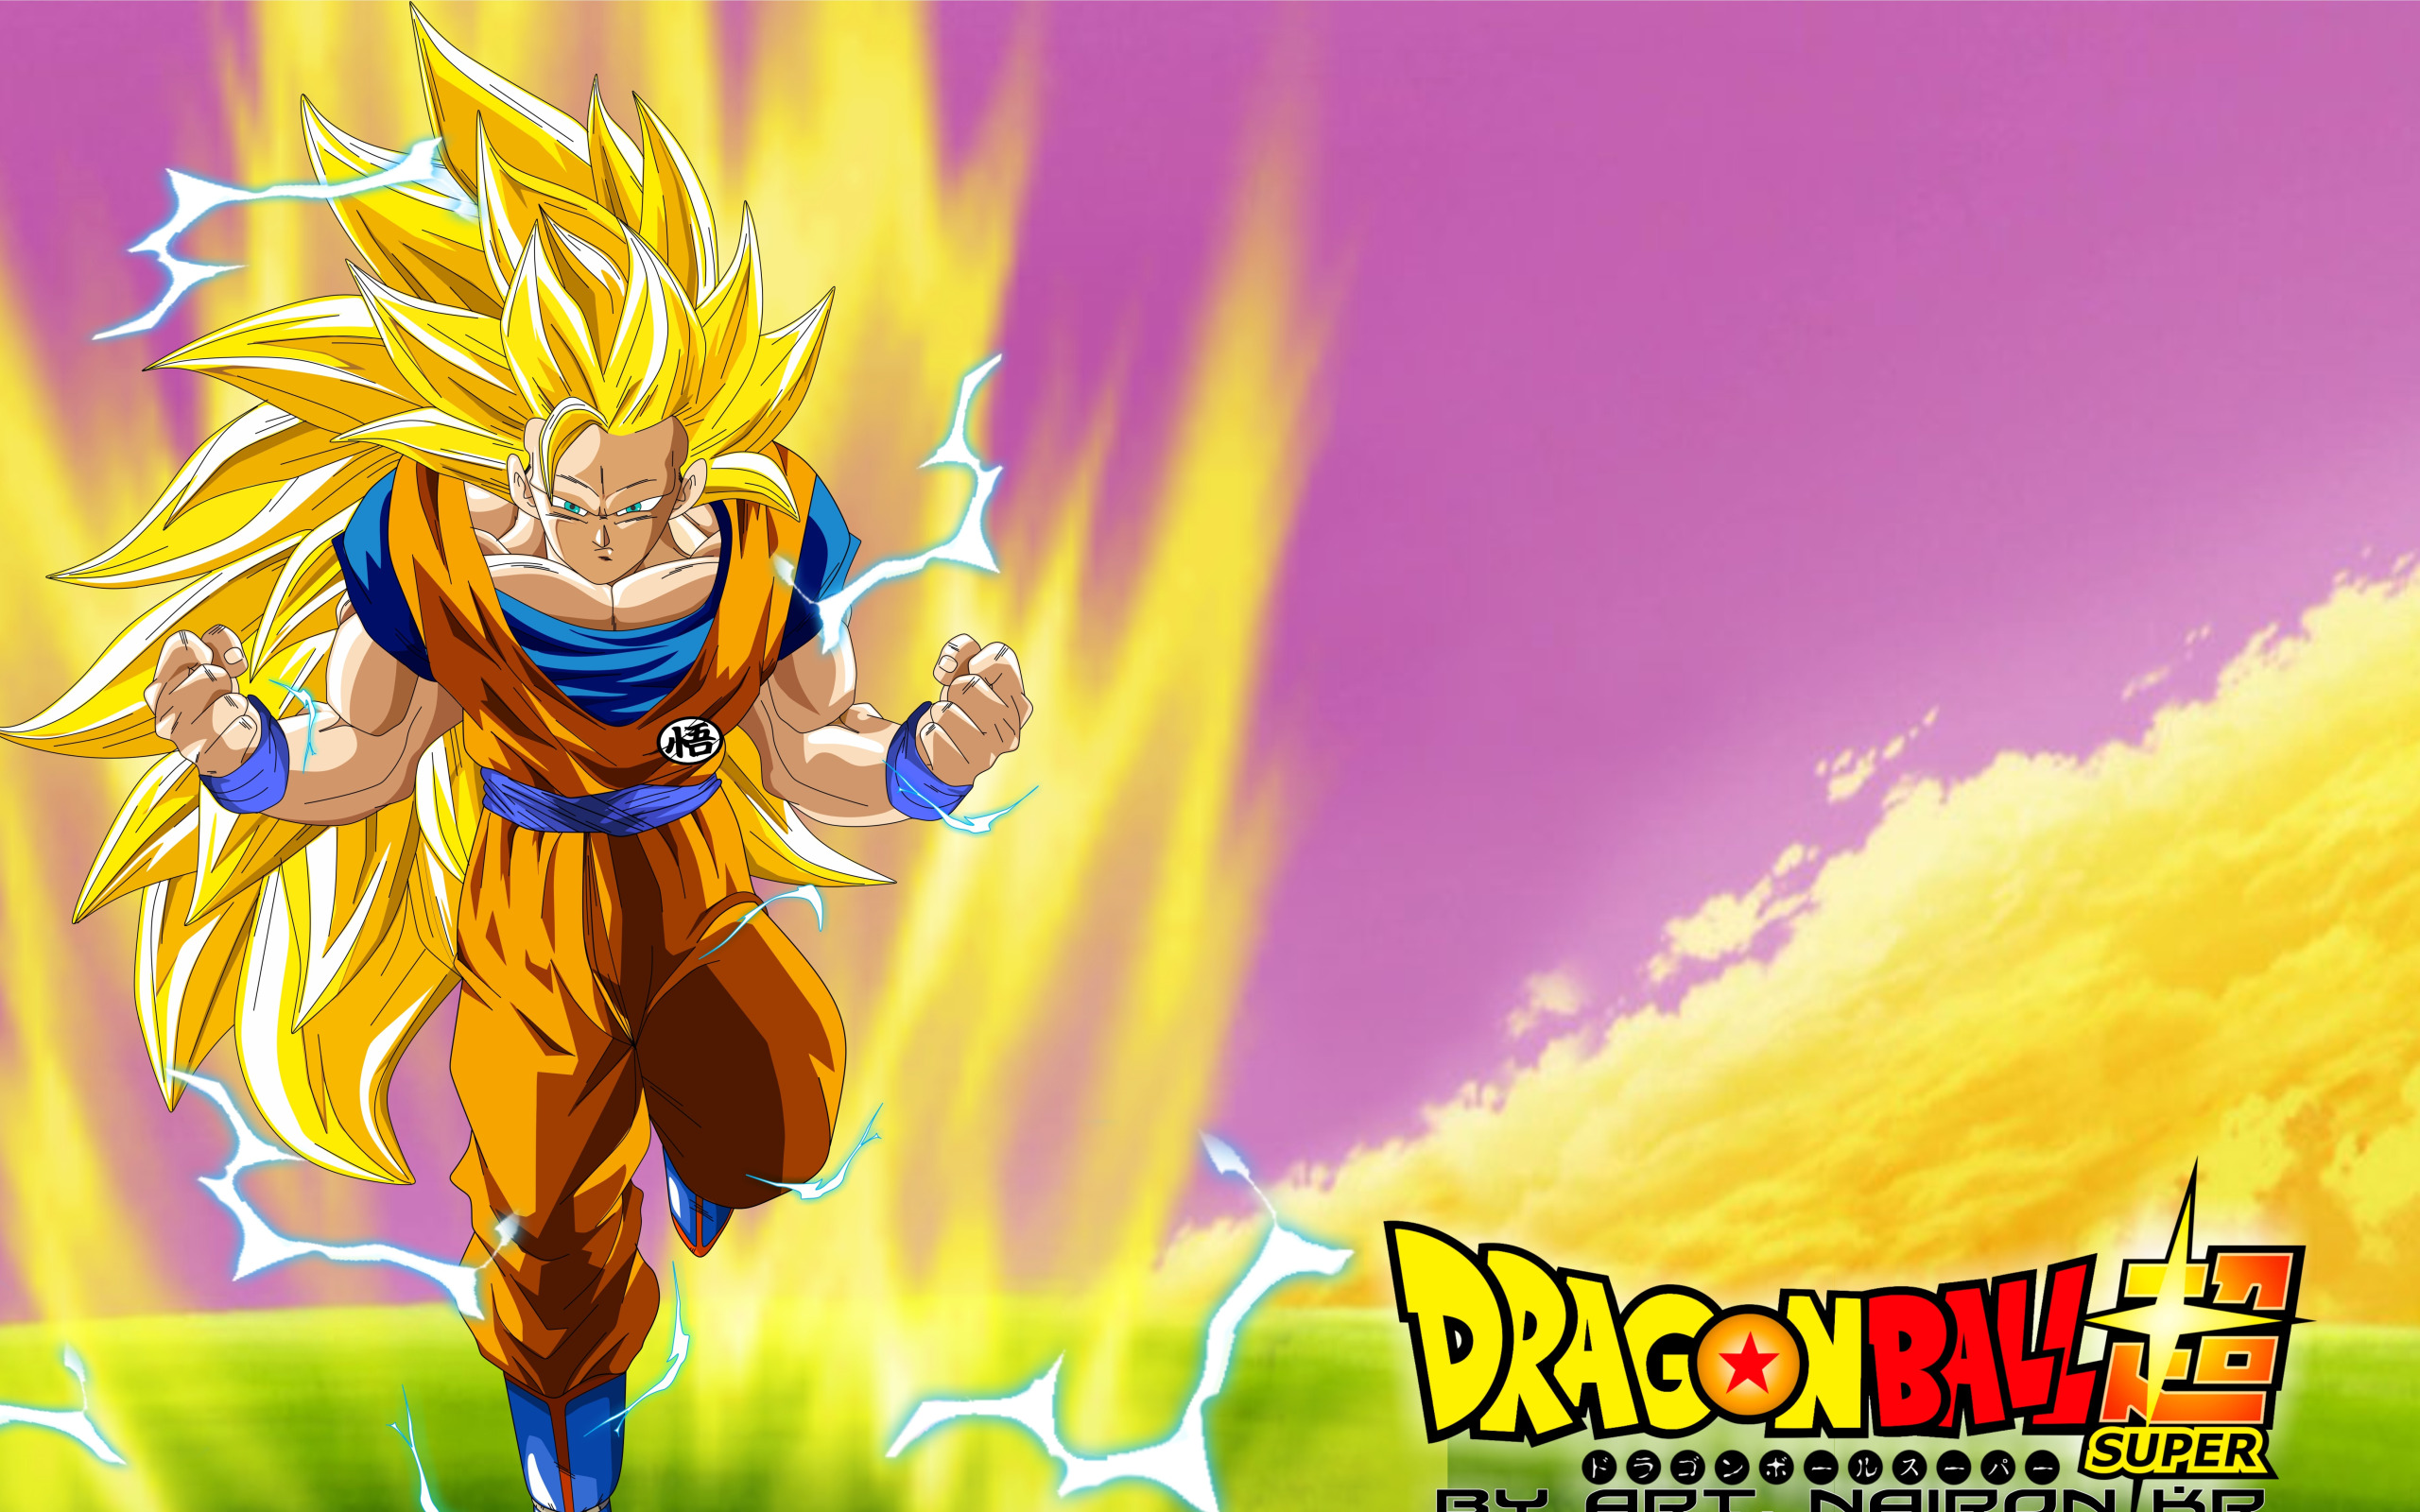 Download Super Saiyan 1 Goku DBZ 4K Wallpaper